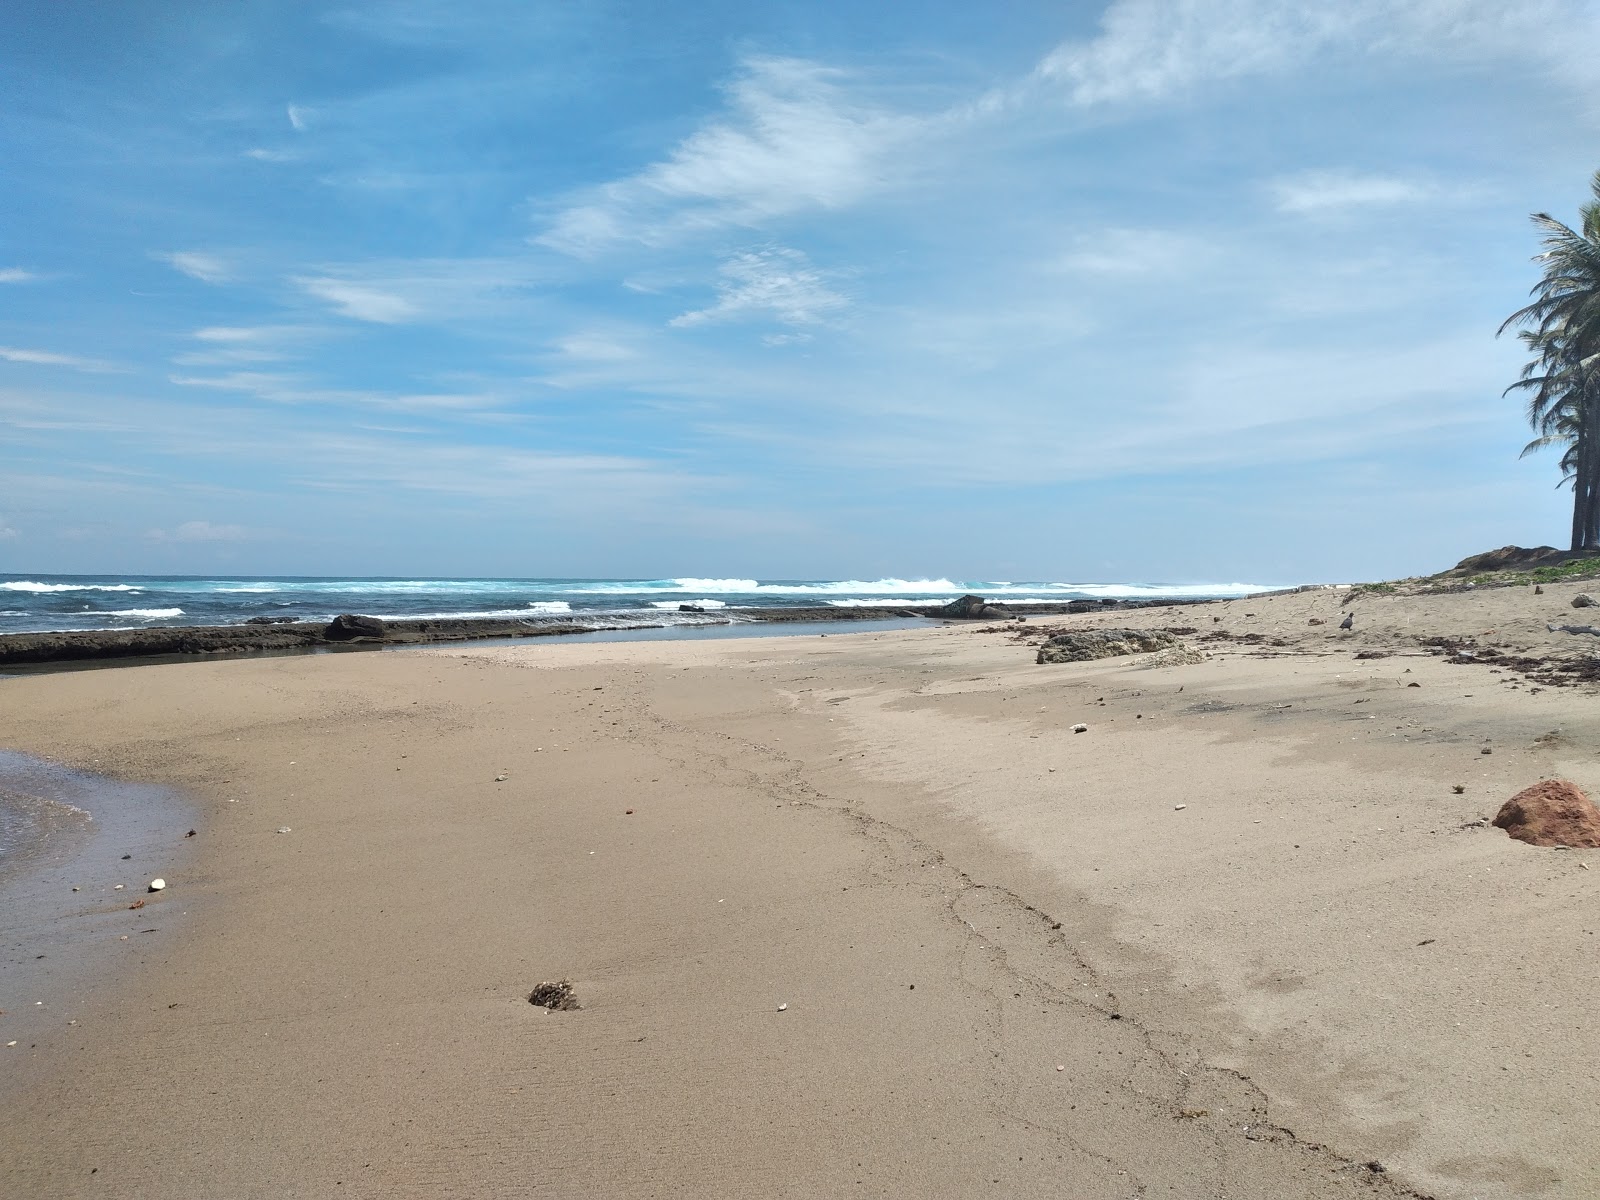 Zdjęcie Mar Azul beach z przestronna plaża